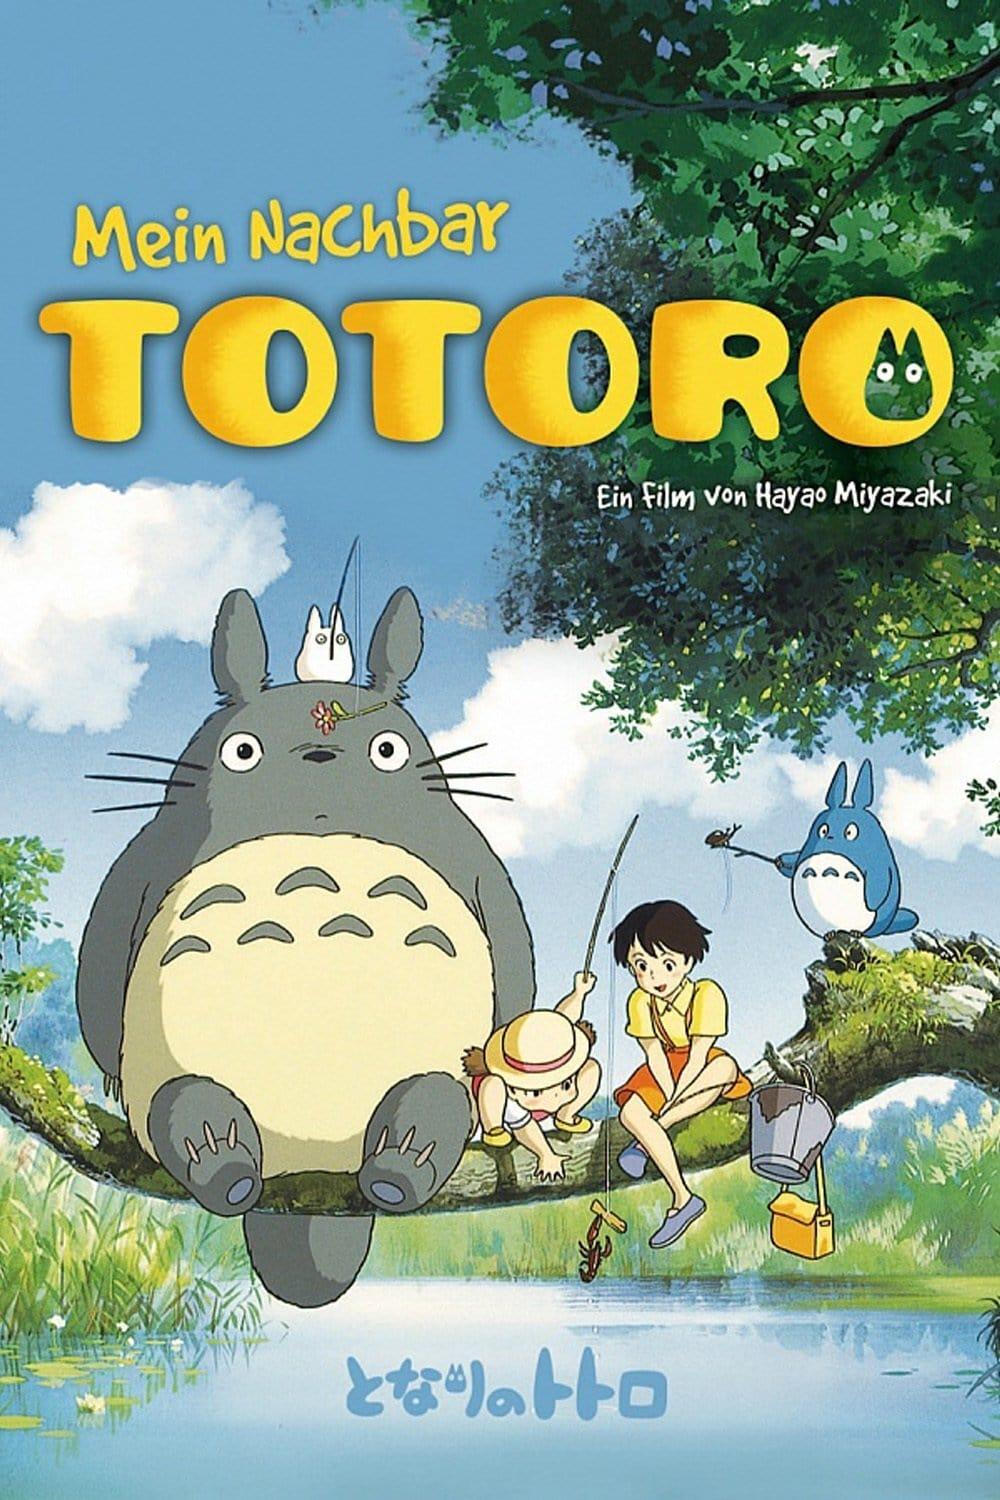 Mein Nachbar Totoro poster